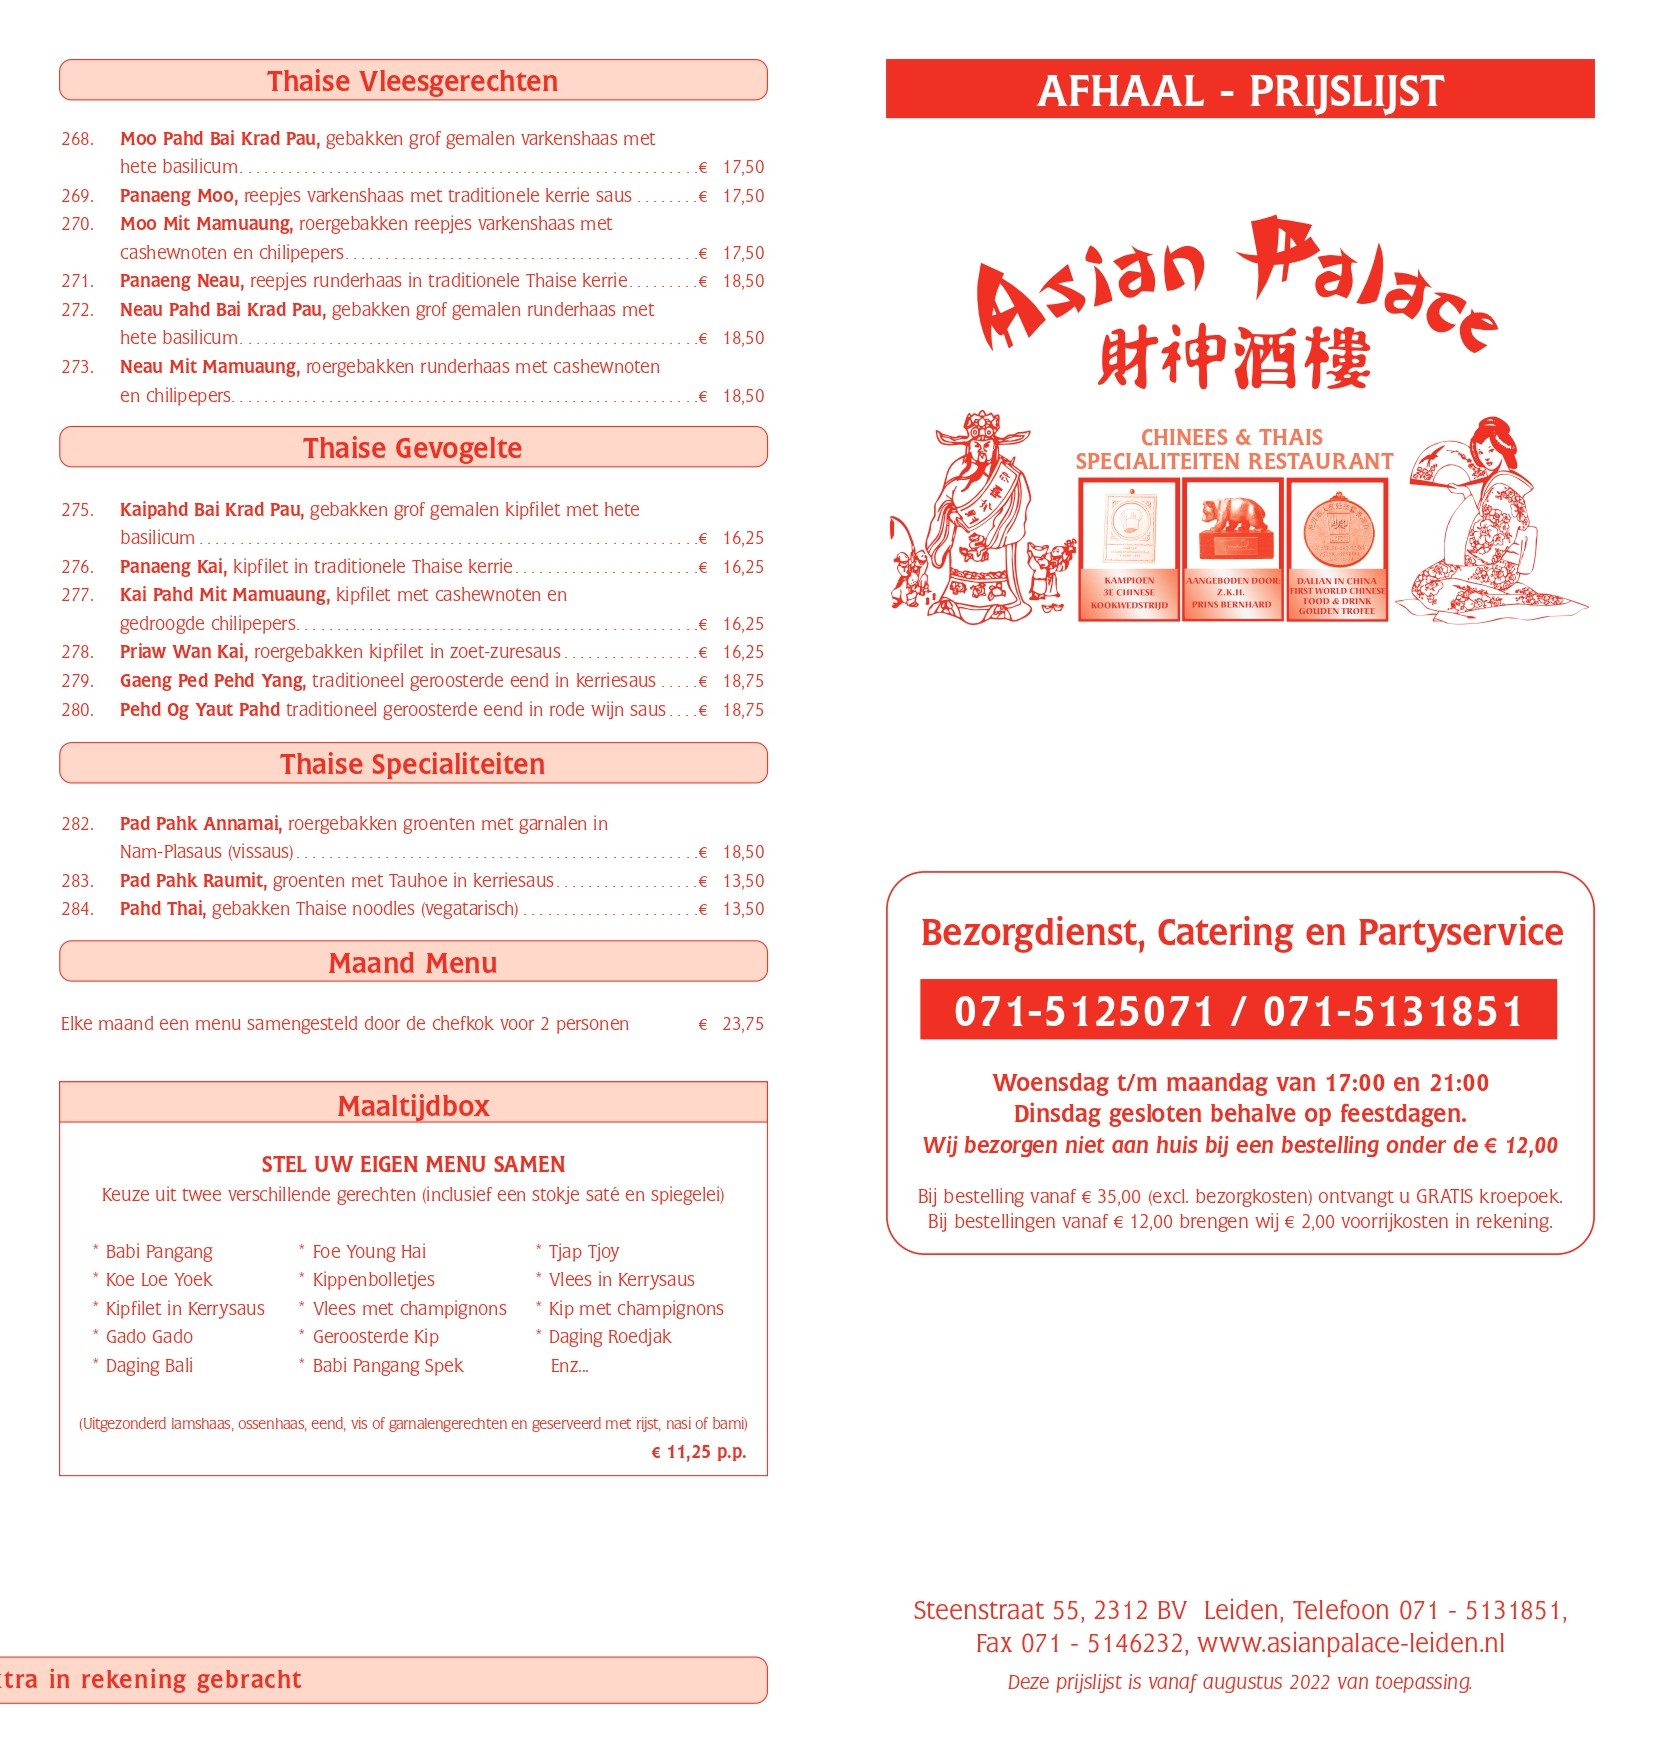 p4 38425 asian palace prijslijst aug 2022 web 1 page 00011